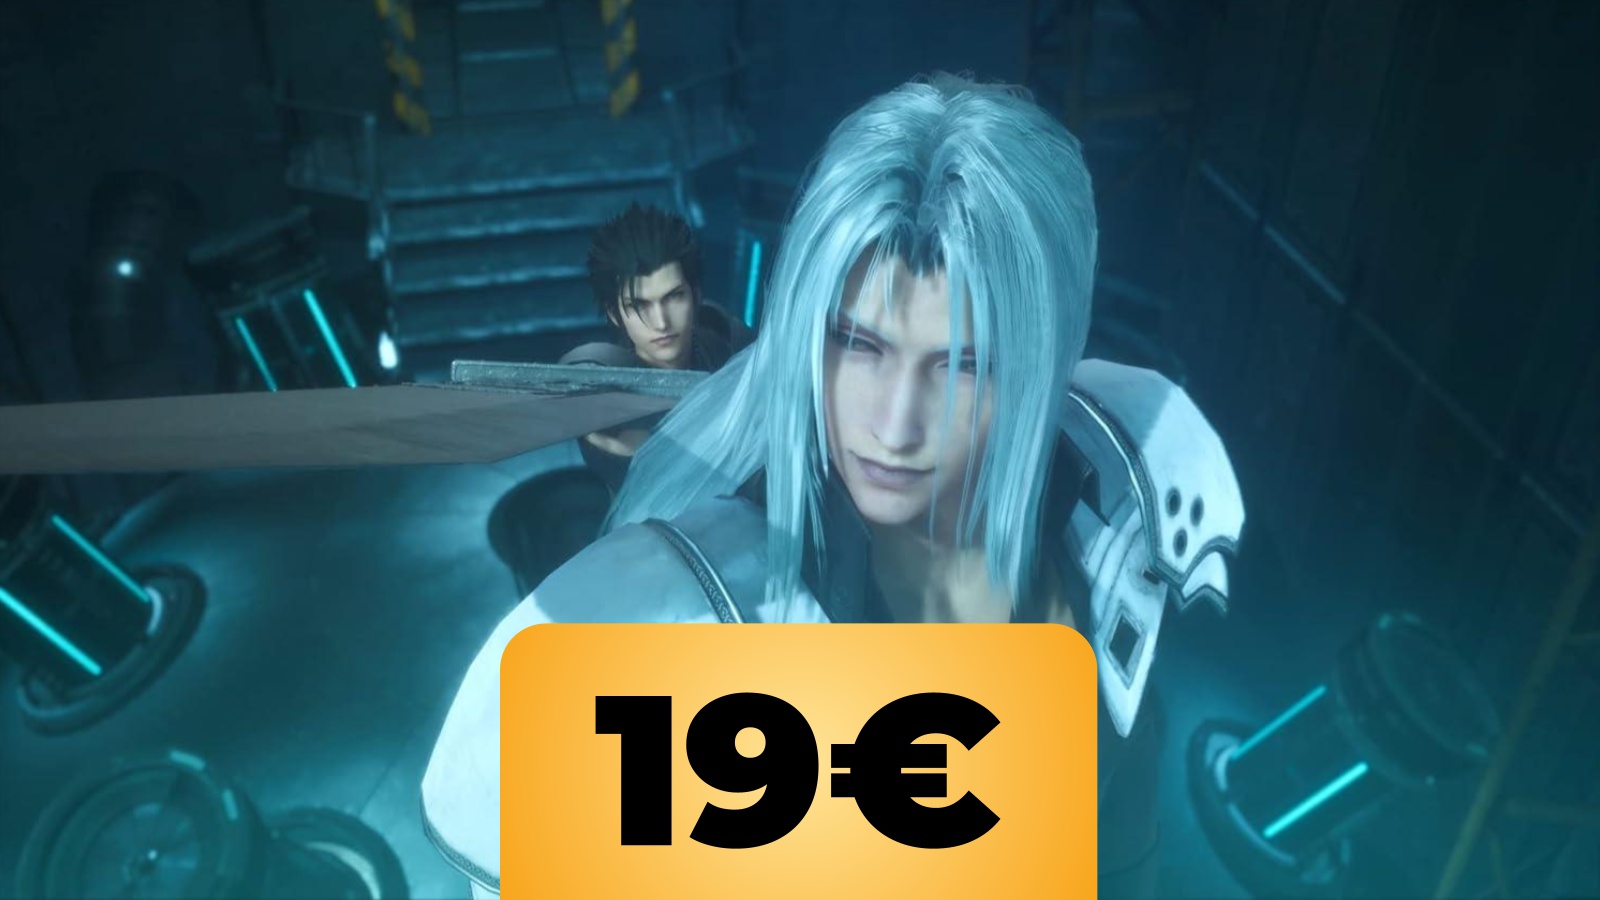 Crisis Core Final Fantasy 7 Reunion a un nuovo prezzo minimo storico con l'offerta di Amazon